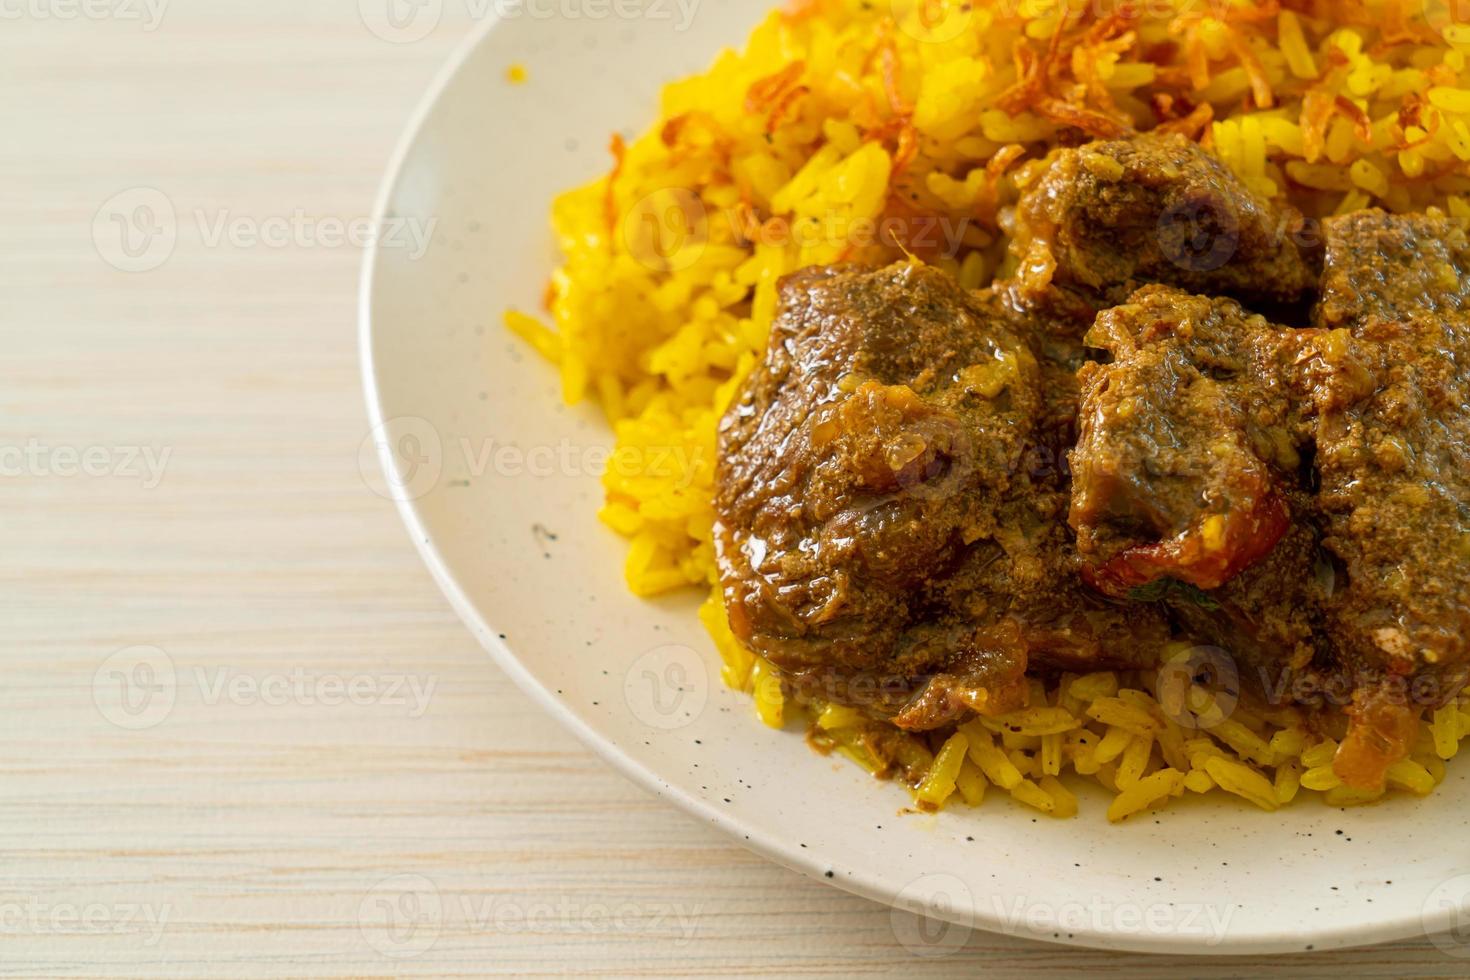 biryani de carne ou arroz com curry e carne - versão tailandês-muçulmana do biryani indiano, com arroz amarelo perfumado e carne bovina foto